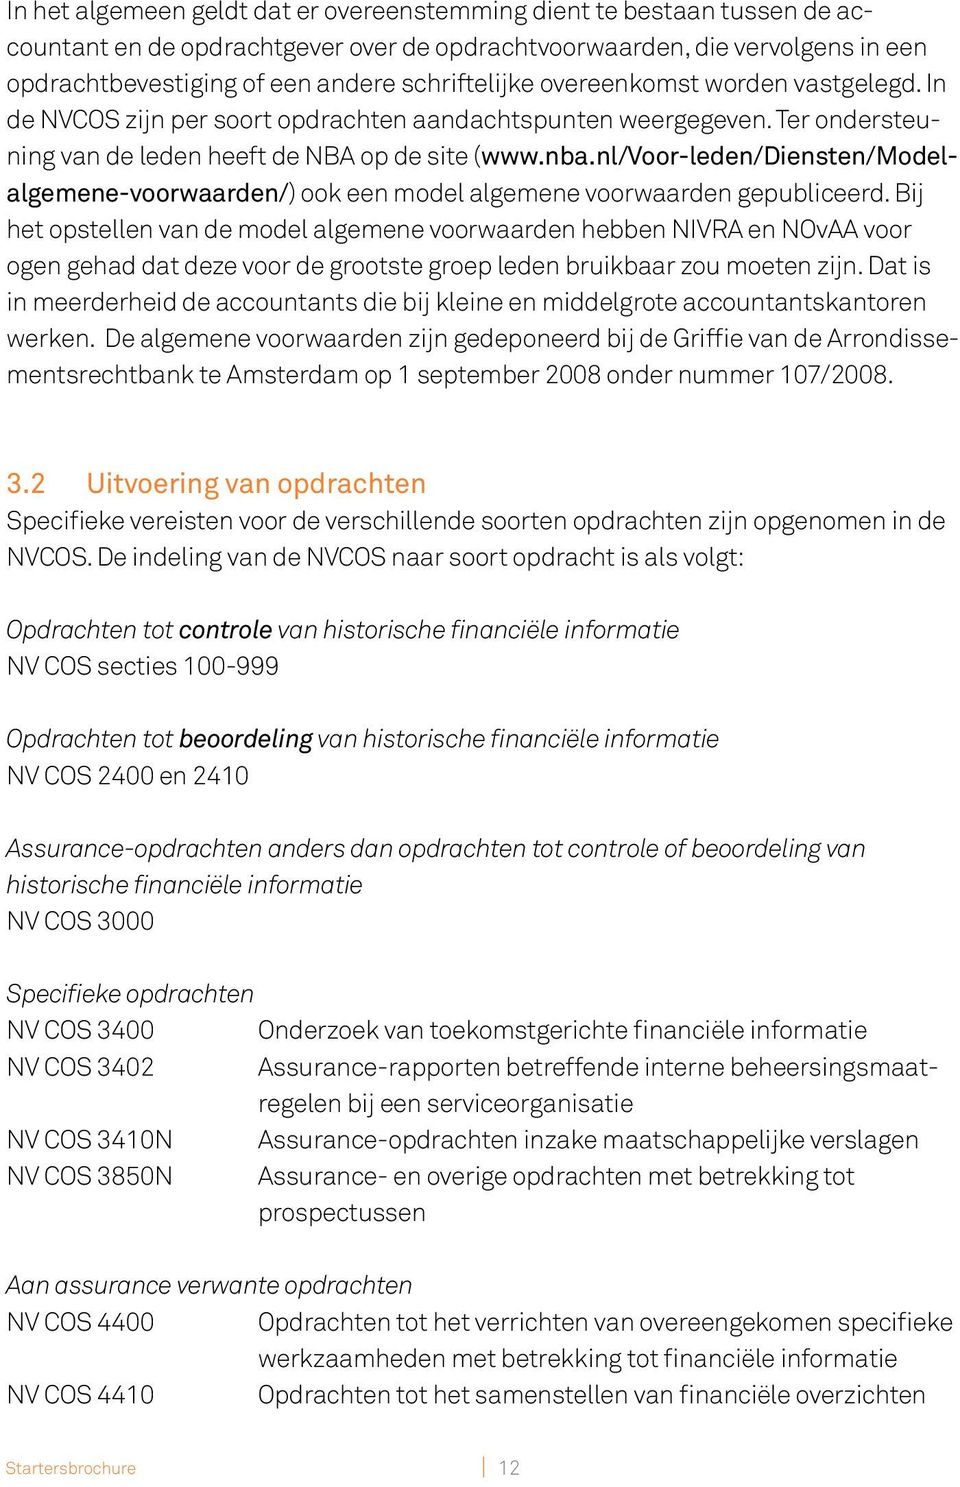 nl/voor-leden/diensten/modelalgemene-voorwaarden/) ook een model algemene voorwaarden gepubliceerd.